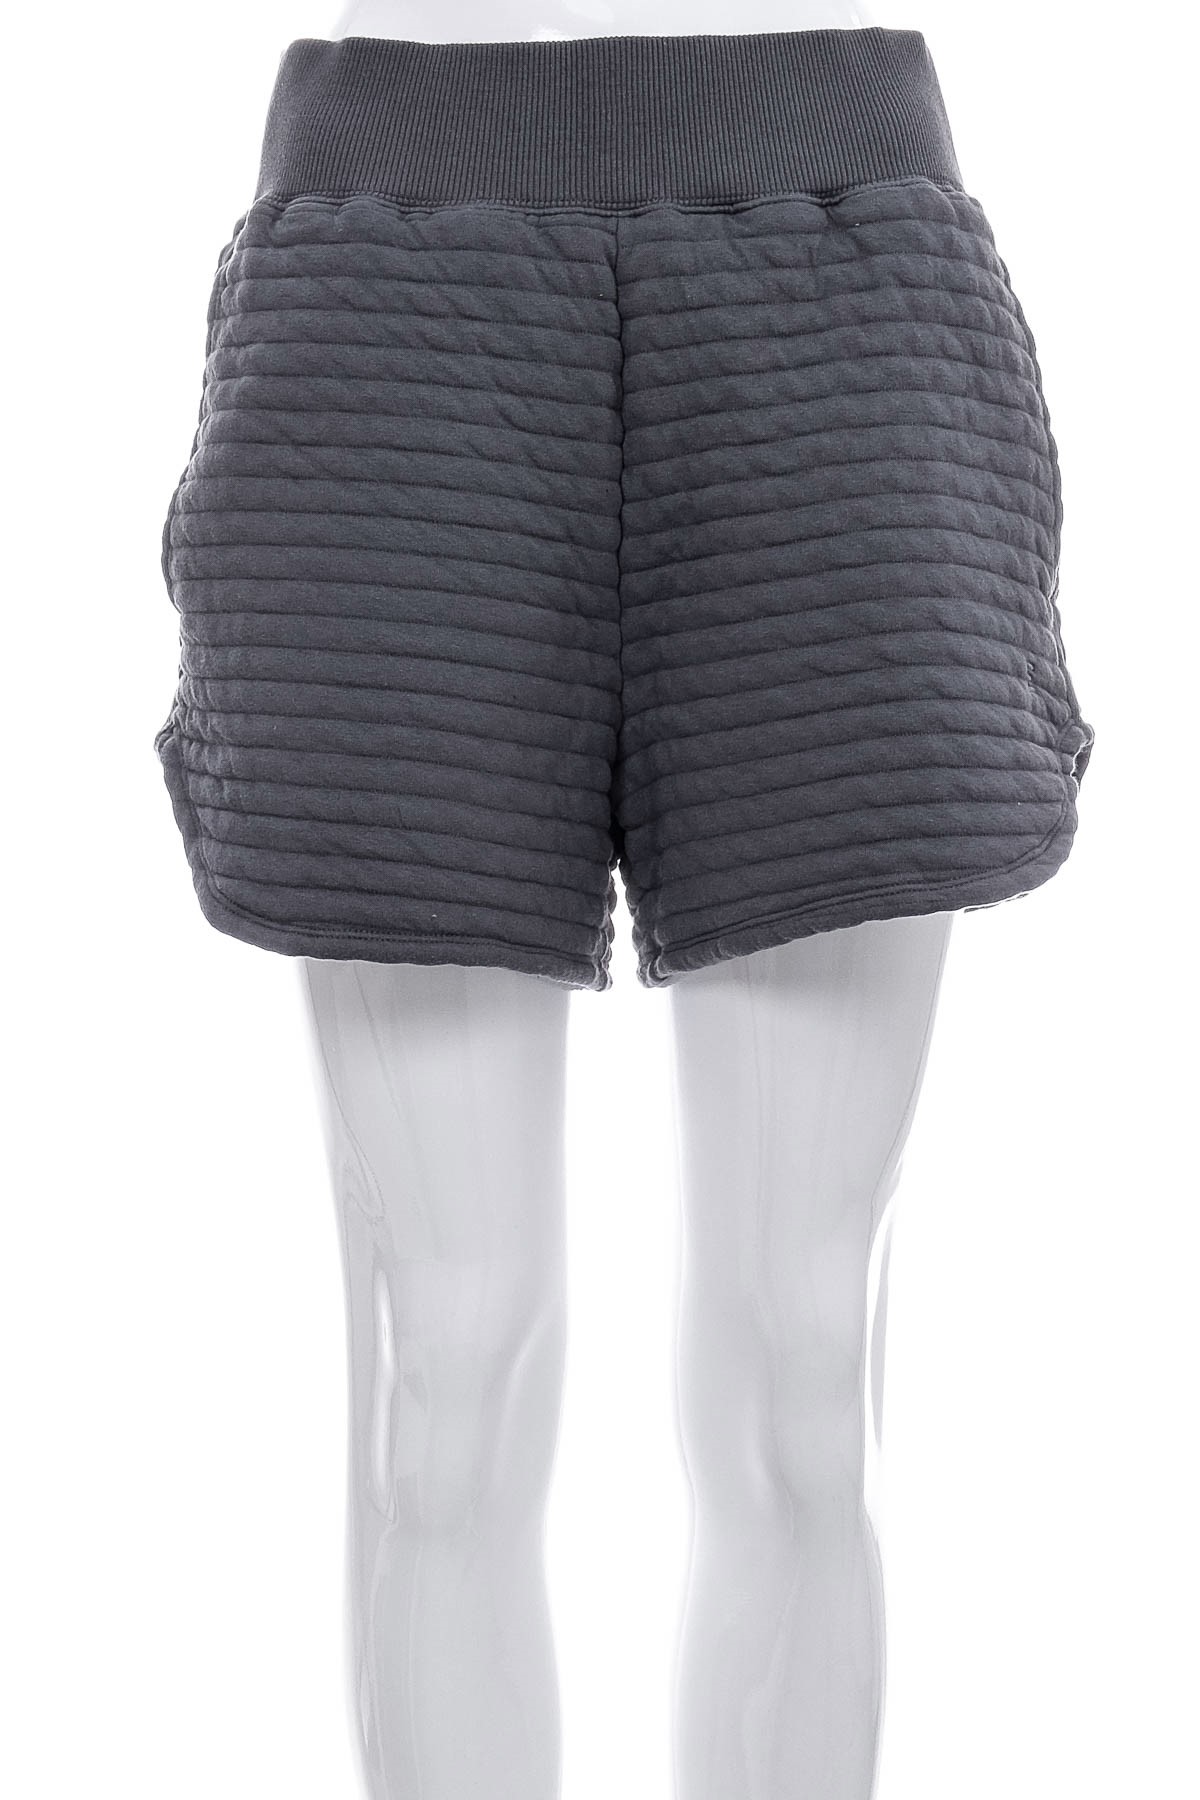 Female shorts - EVERLANE - 0